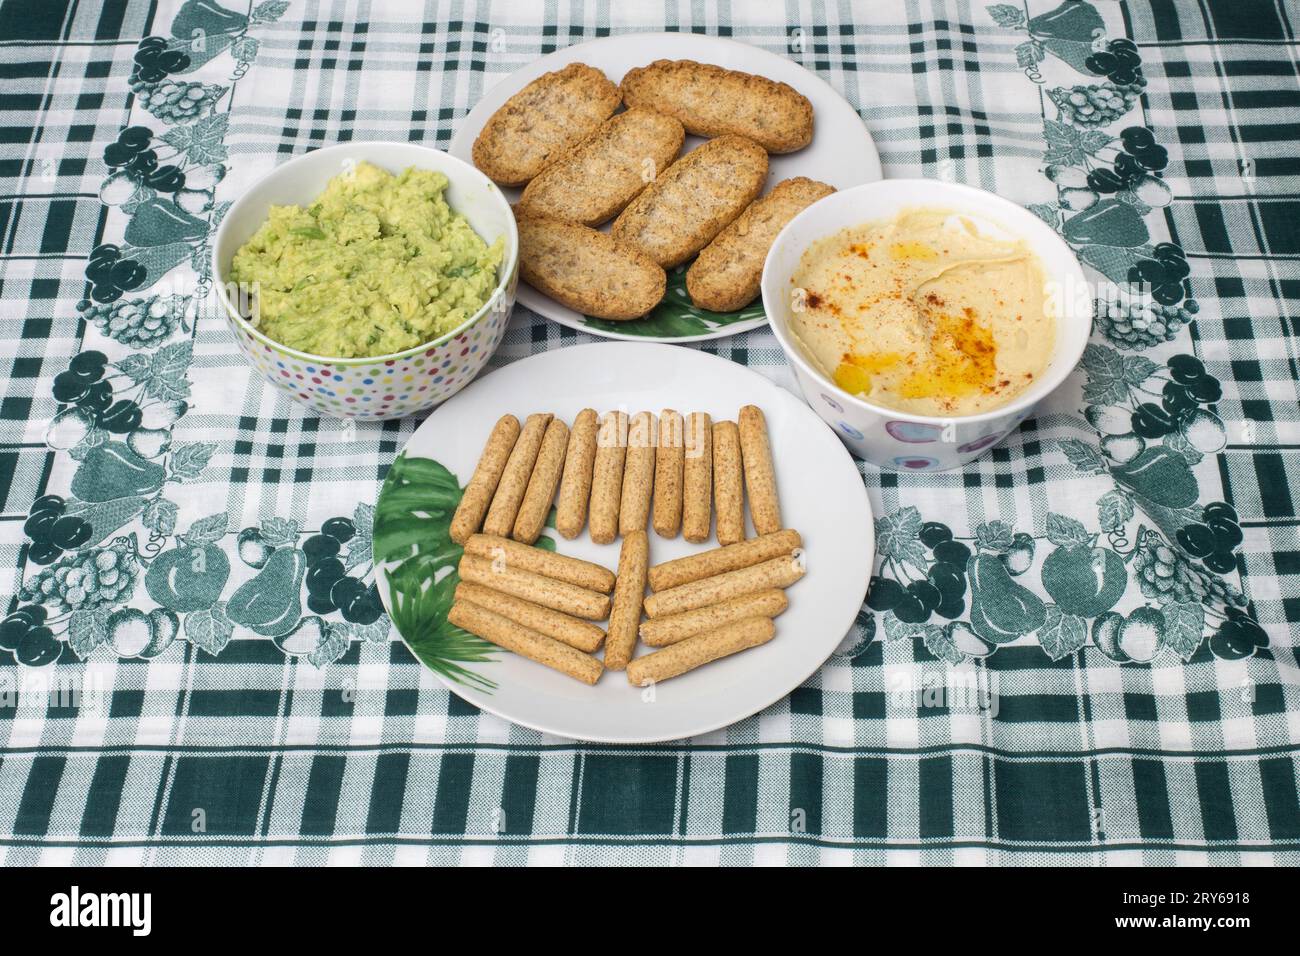 Zwei Schüsseln mit cremigem Hummus und Guacamole Dip werden auf einem Tisch mit einer grünen und geometrischen Tischdecke zusammen mit Vollkorntoast und Brotstangen platziert Stockfoto